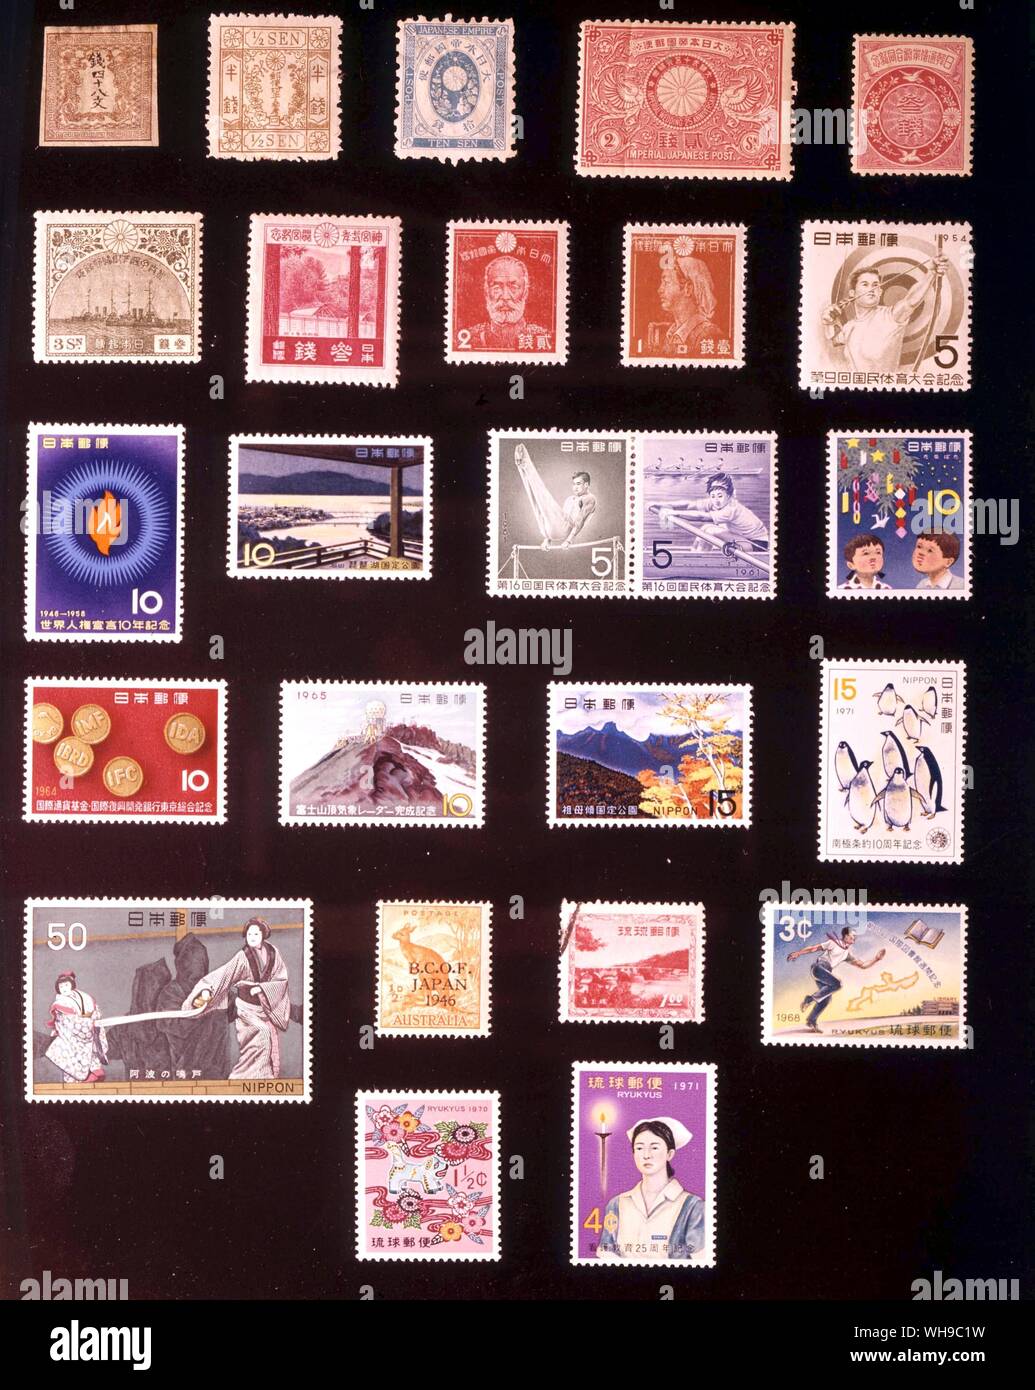 Asien - JAPAN UND RYUKYUS: (von links nach rechts) 1. 48 Mon, 1871, 2. 0,5 sen, 1872, 3. 10 sen, 1876, 4. 2 sen, 1894, 5. 3 sen, 1905, 6. 3 sen, 1921, 7. 3 sen, 1929, 8. 2 sen, 1937, 9. 1 sen, 1943, 10. 5 Yen, 1954, 11. 10 sen, 1958, 12. 10 Sen 1961, 13. 5 + 5 Yen, 1961, 14. 10 Yen, 1962, 15. 10 Yen, 1964, 16. 10 Yen, 1965, 17. 15 Yan, 1967, 18. 15 Yen, 1971, 19. 50 Yen, 1972, 20. Britische Besetzung von Japan, 0,5 Pfennig, 1946, 21. Ryukyu Inseln, 1 Yen, 1952, 22. Ryukyu Inseln, 3 Cent 1968, 23. Ryukyu Inseln, 1,5 Cent, 1969, 24. Ryukyu Inseln, 4 Cent, 1971. Stockfoto